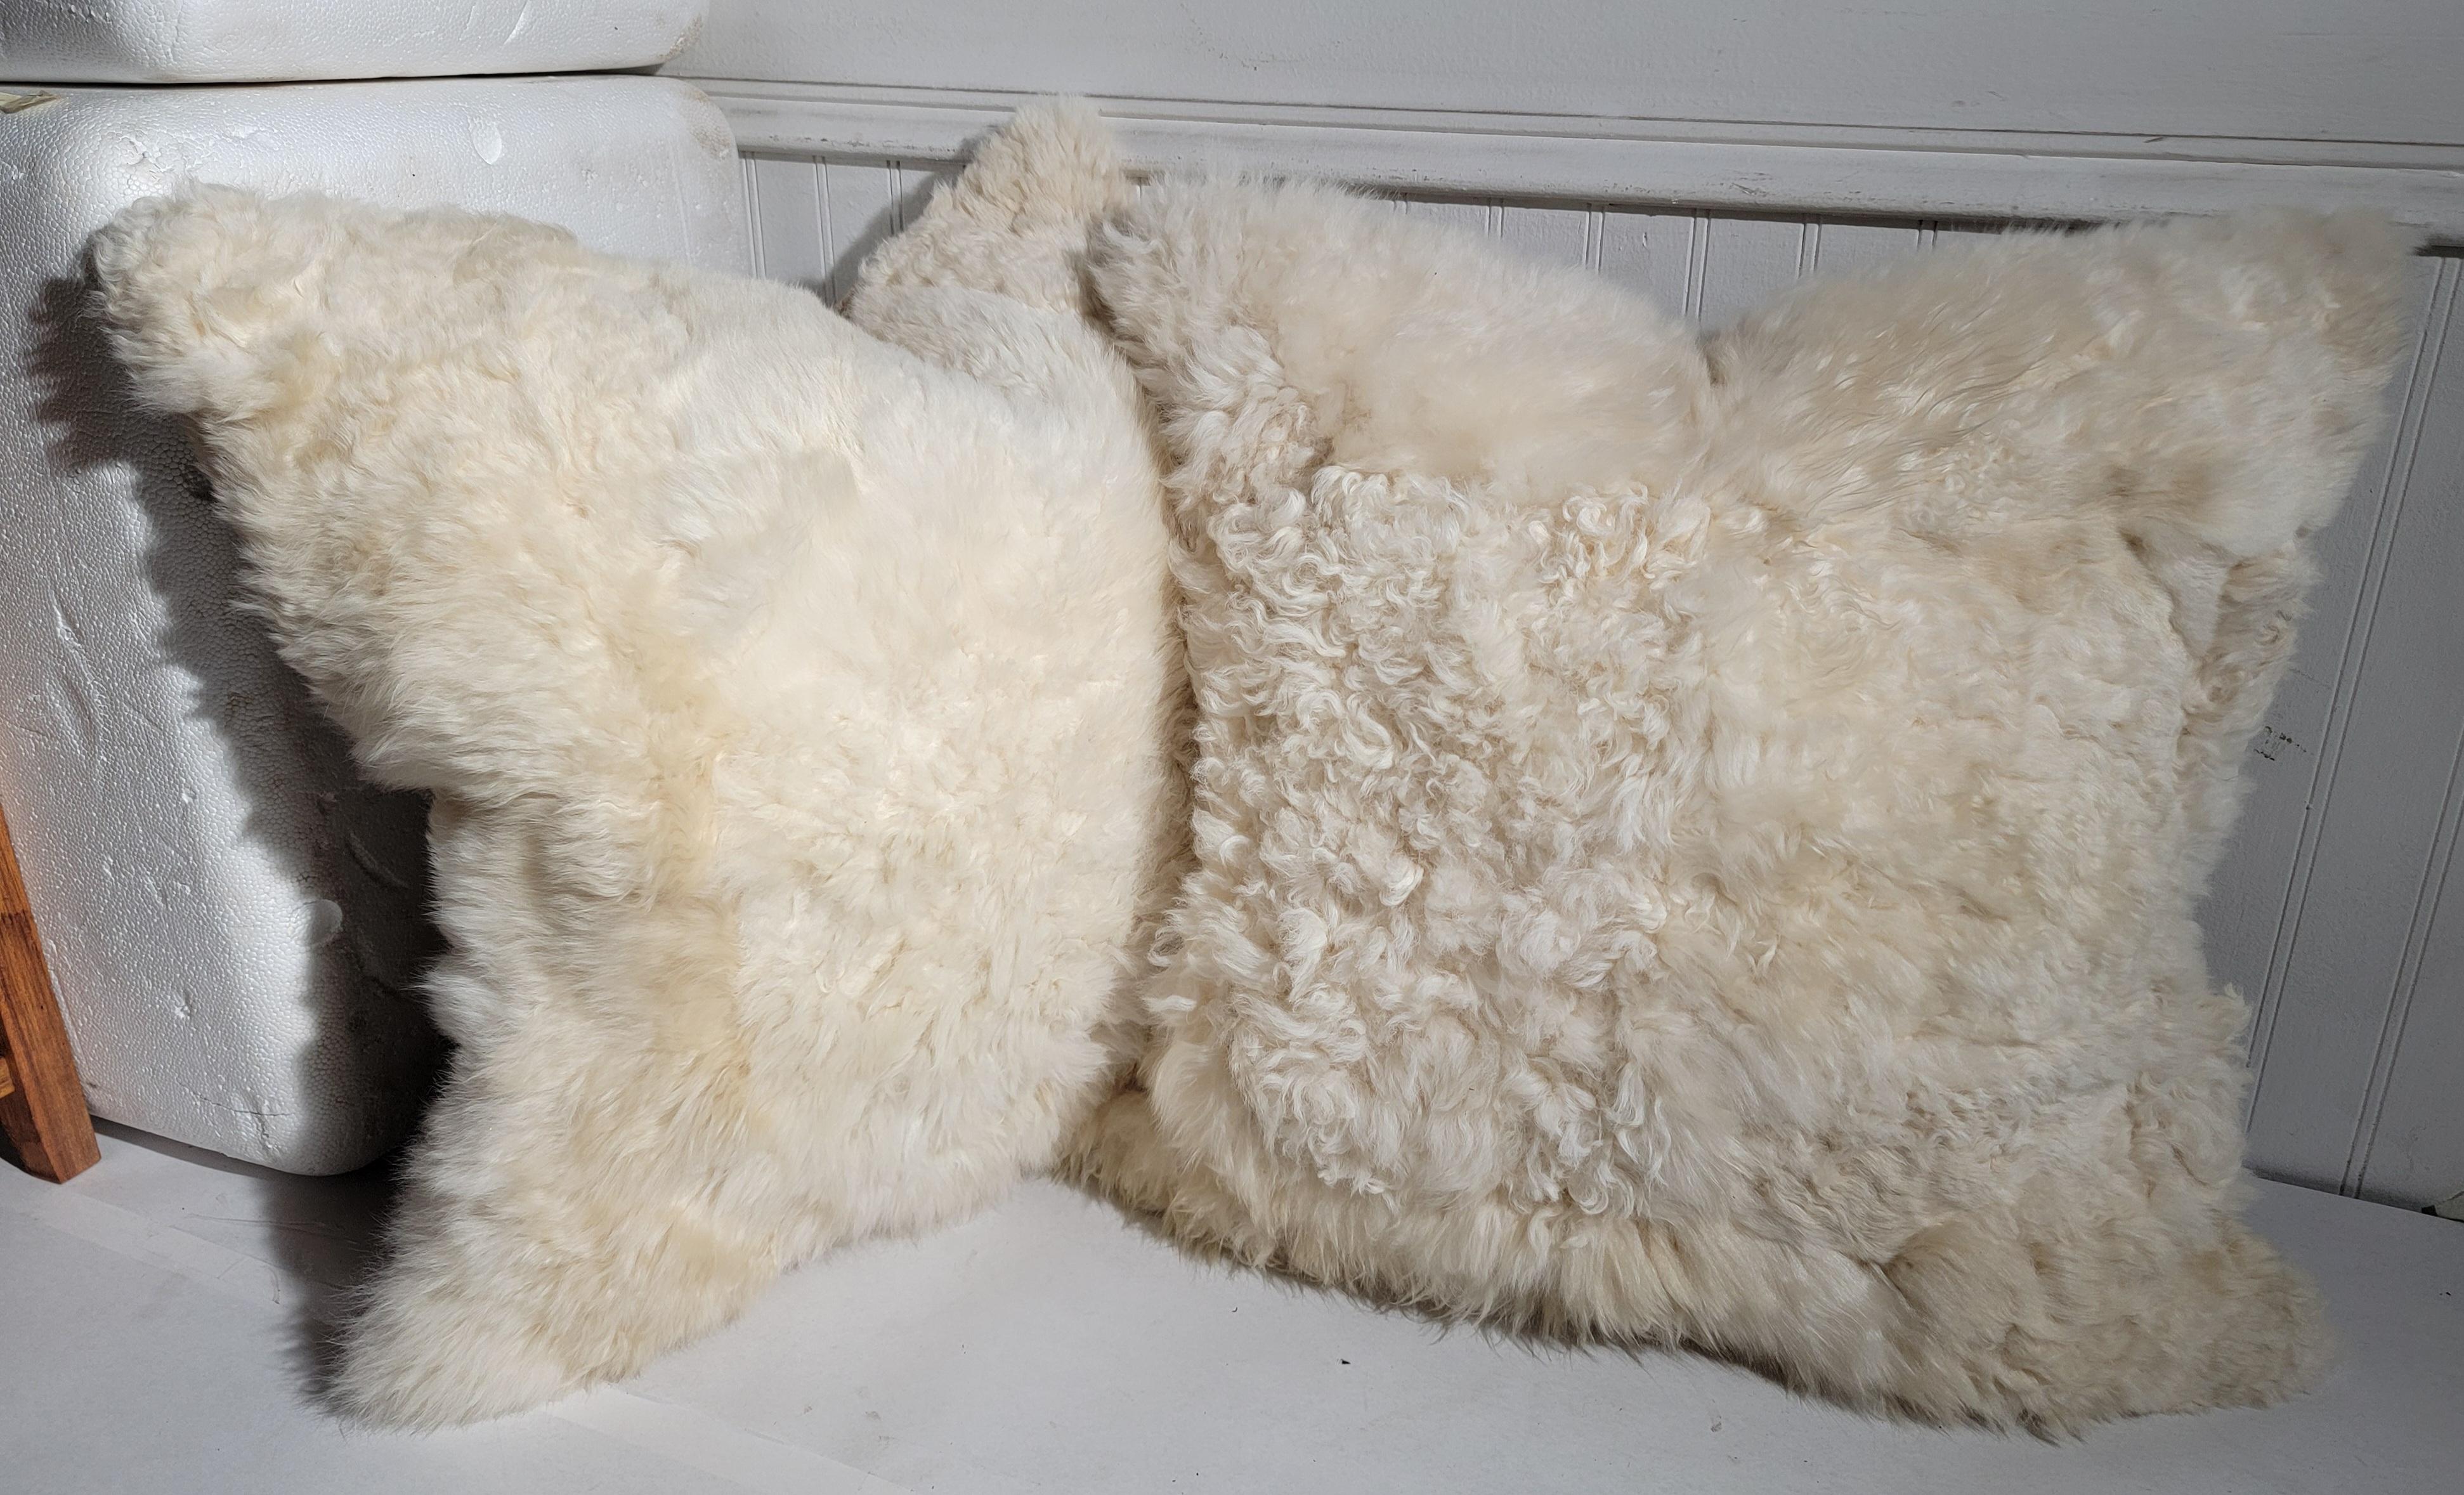 Ces oreillers en peau de mouton super doux et pelucheux sont vraiment incroyables ! Vendus à l'unité ou par paire, les dos sont en peau d'agneau, également très douce et confortable.
Le prix est fixé par paire.